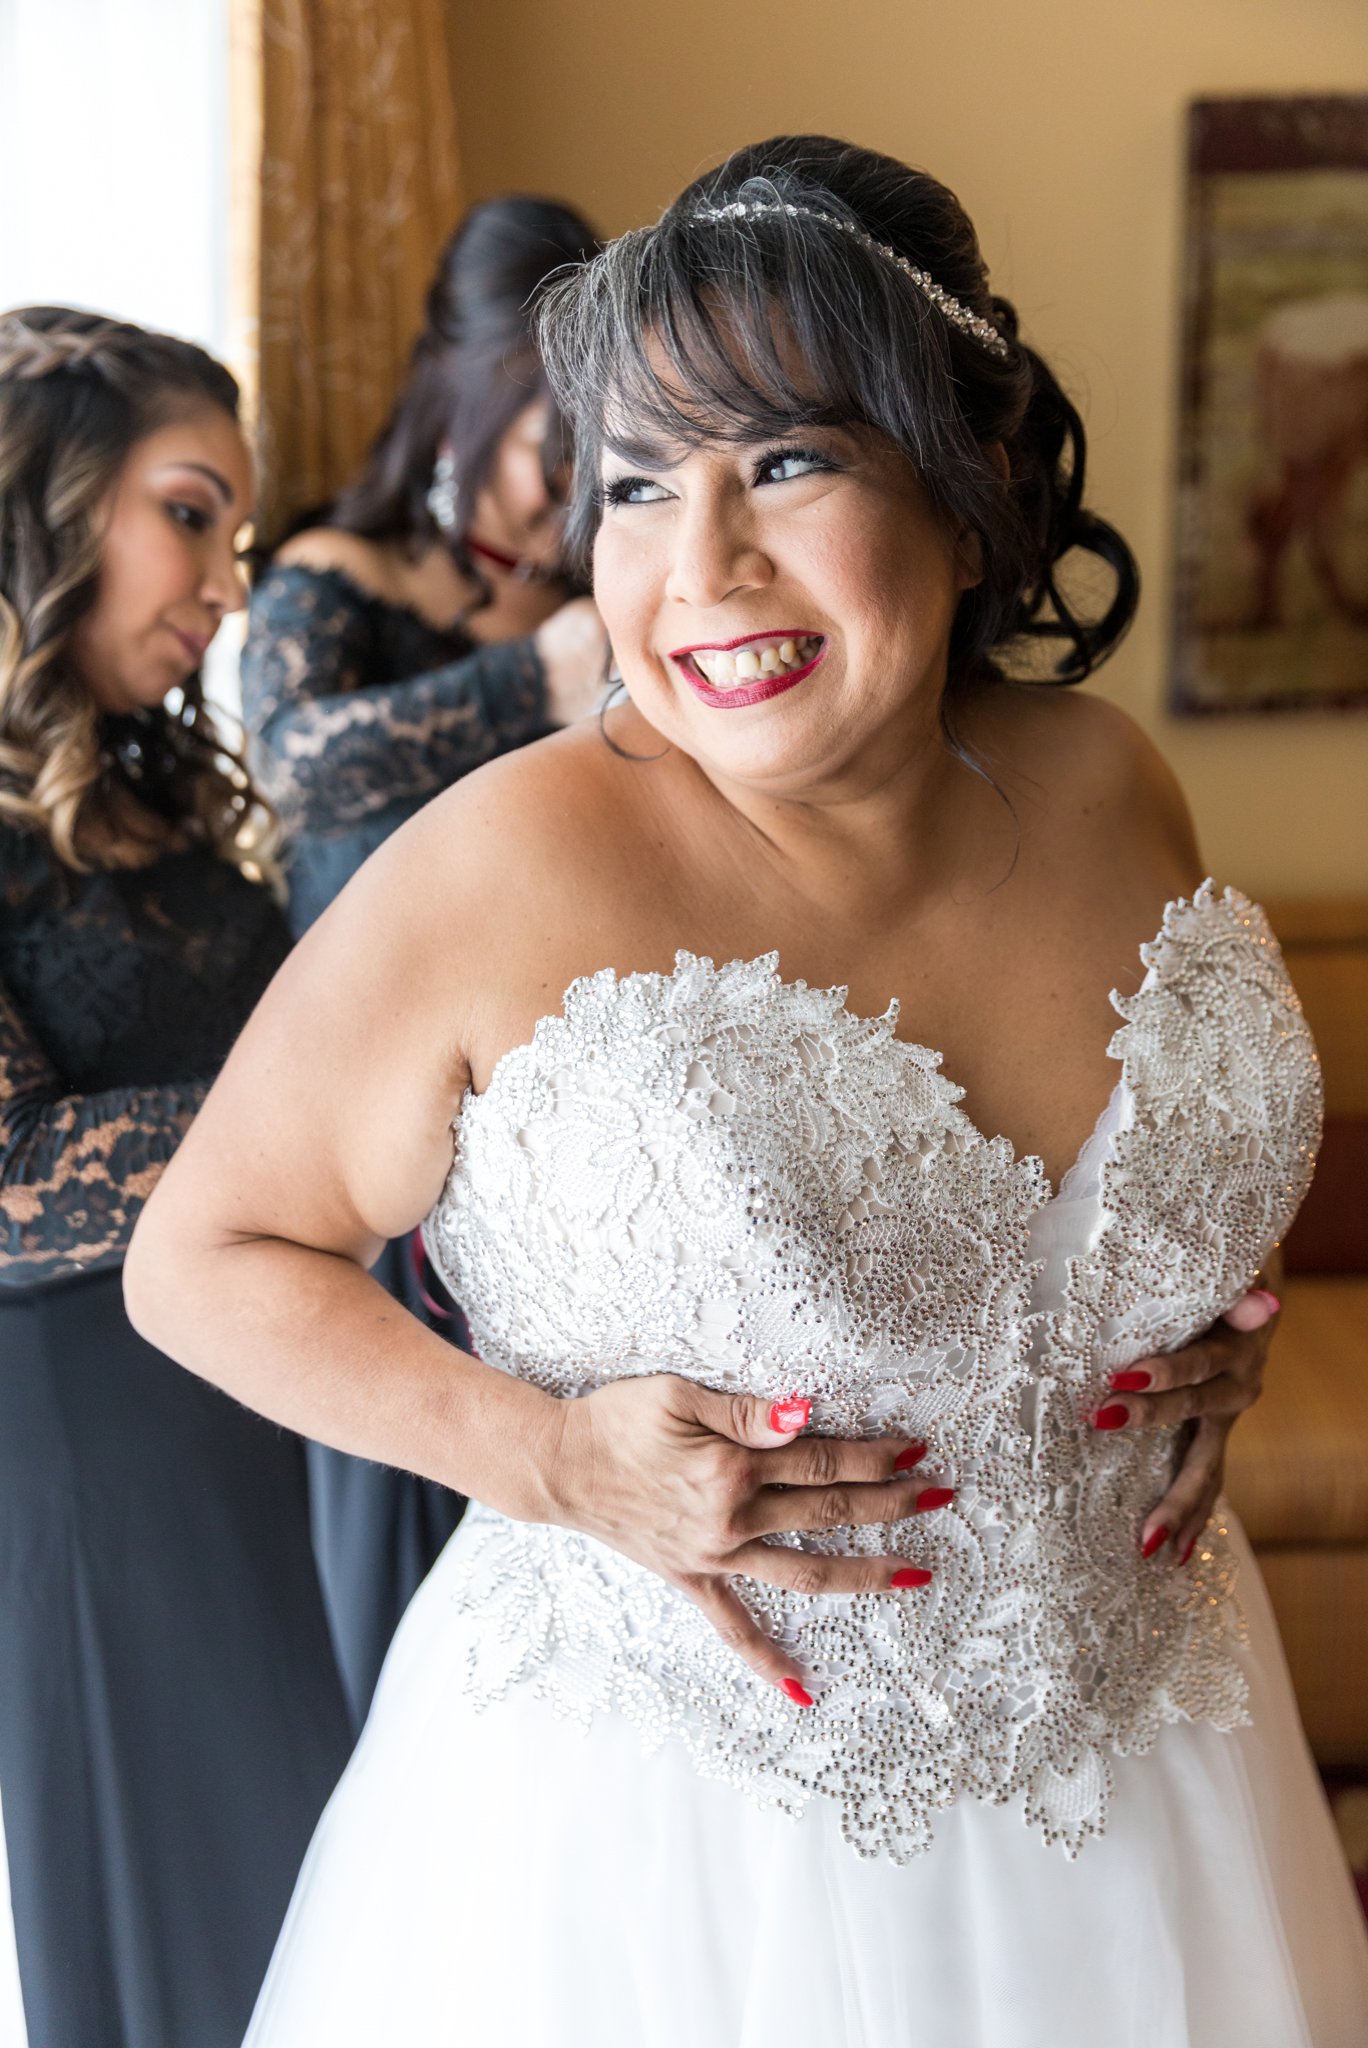 An Elegant Black & Red Wedding at JW Marriott San Antonio by Dawn Elizabeth Studios, San Antonio Wedding Photographer